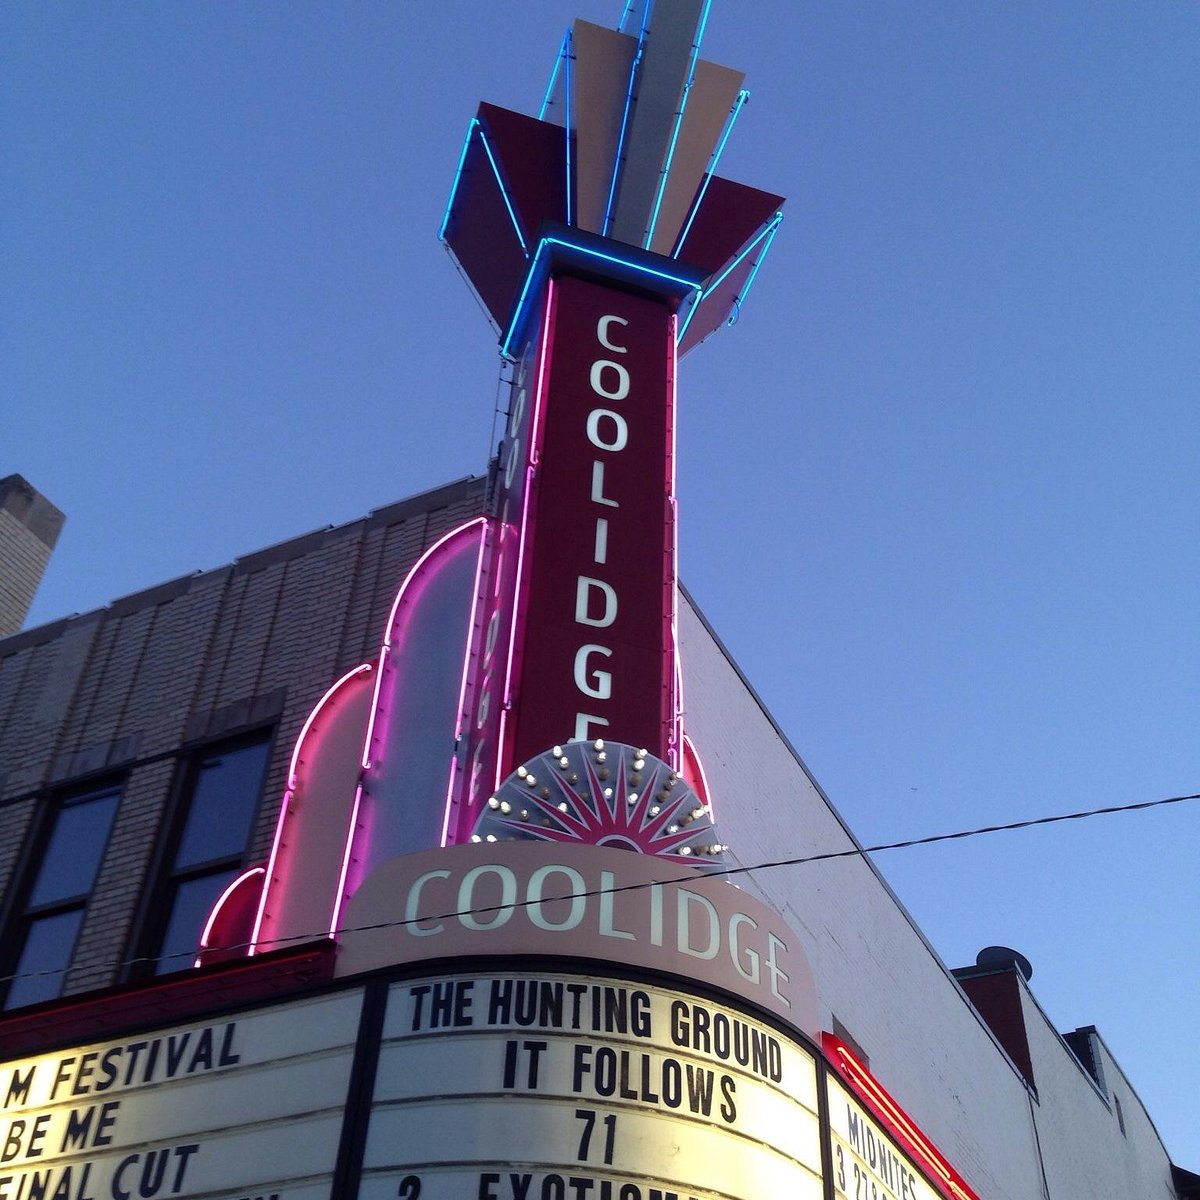 Coolidge Corner Theater Brookline Atualizado 2022 O Que Saber Antes De Ir Sobre O Que As